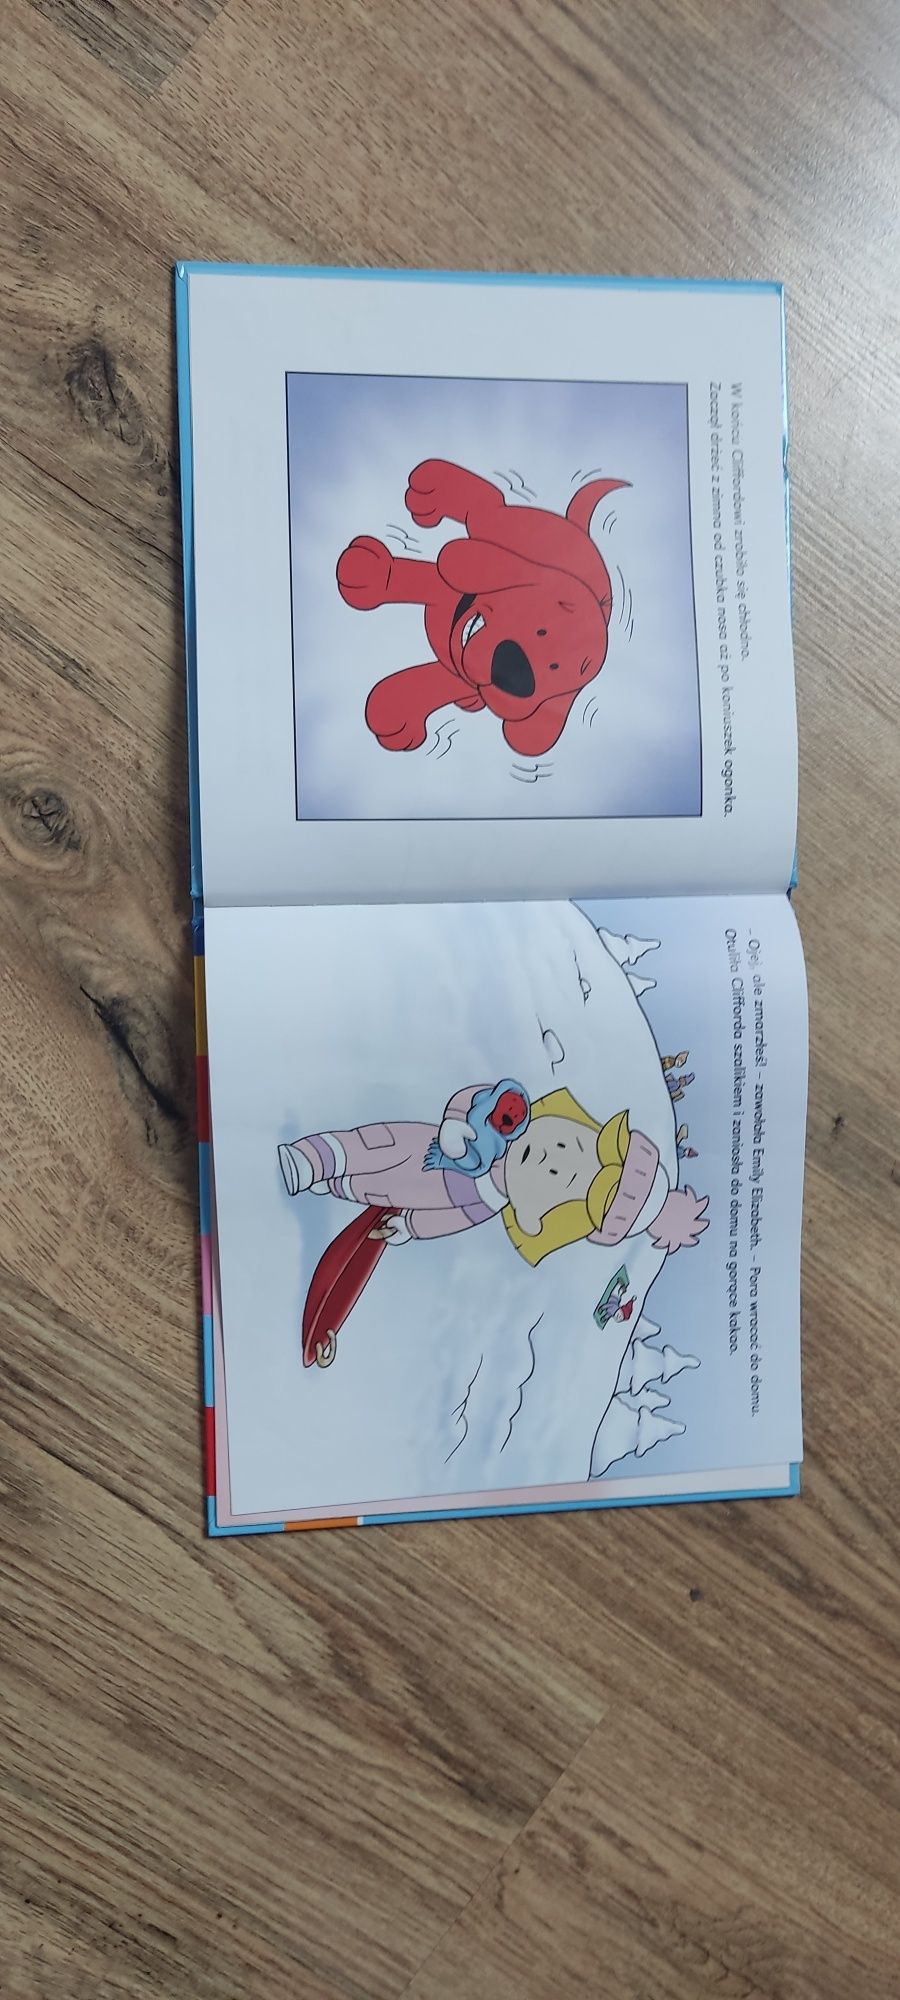 Książka o Cliffordzie. "Małe czerwone sanki"